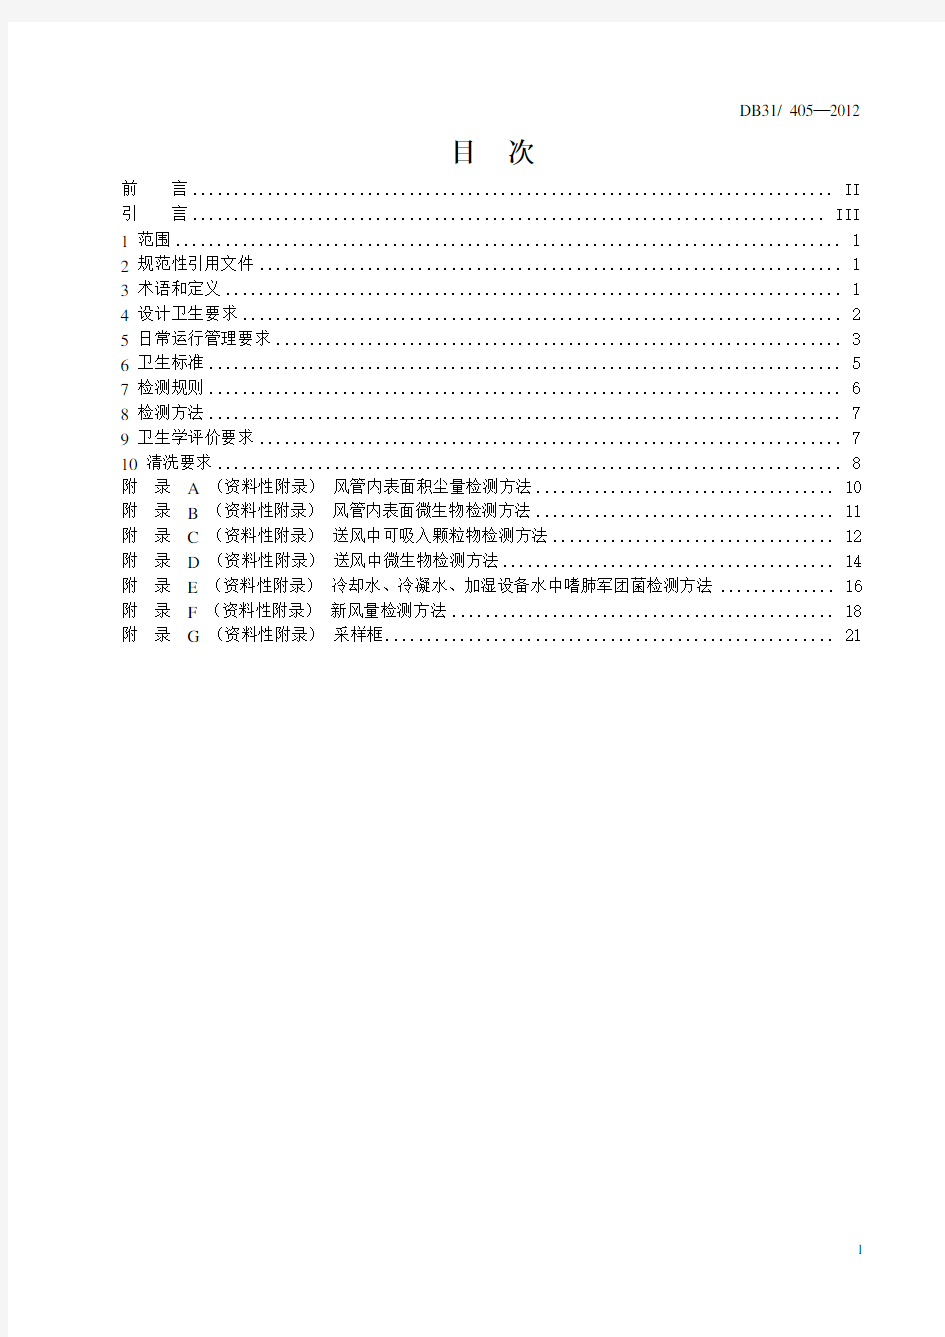 DB31.405—2012上海市集中空调通风系统卫生管理规范